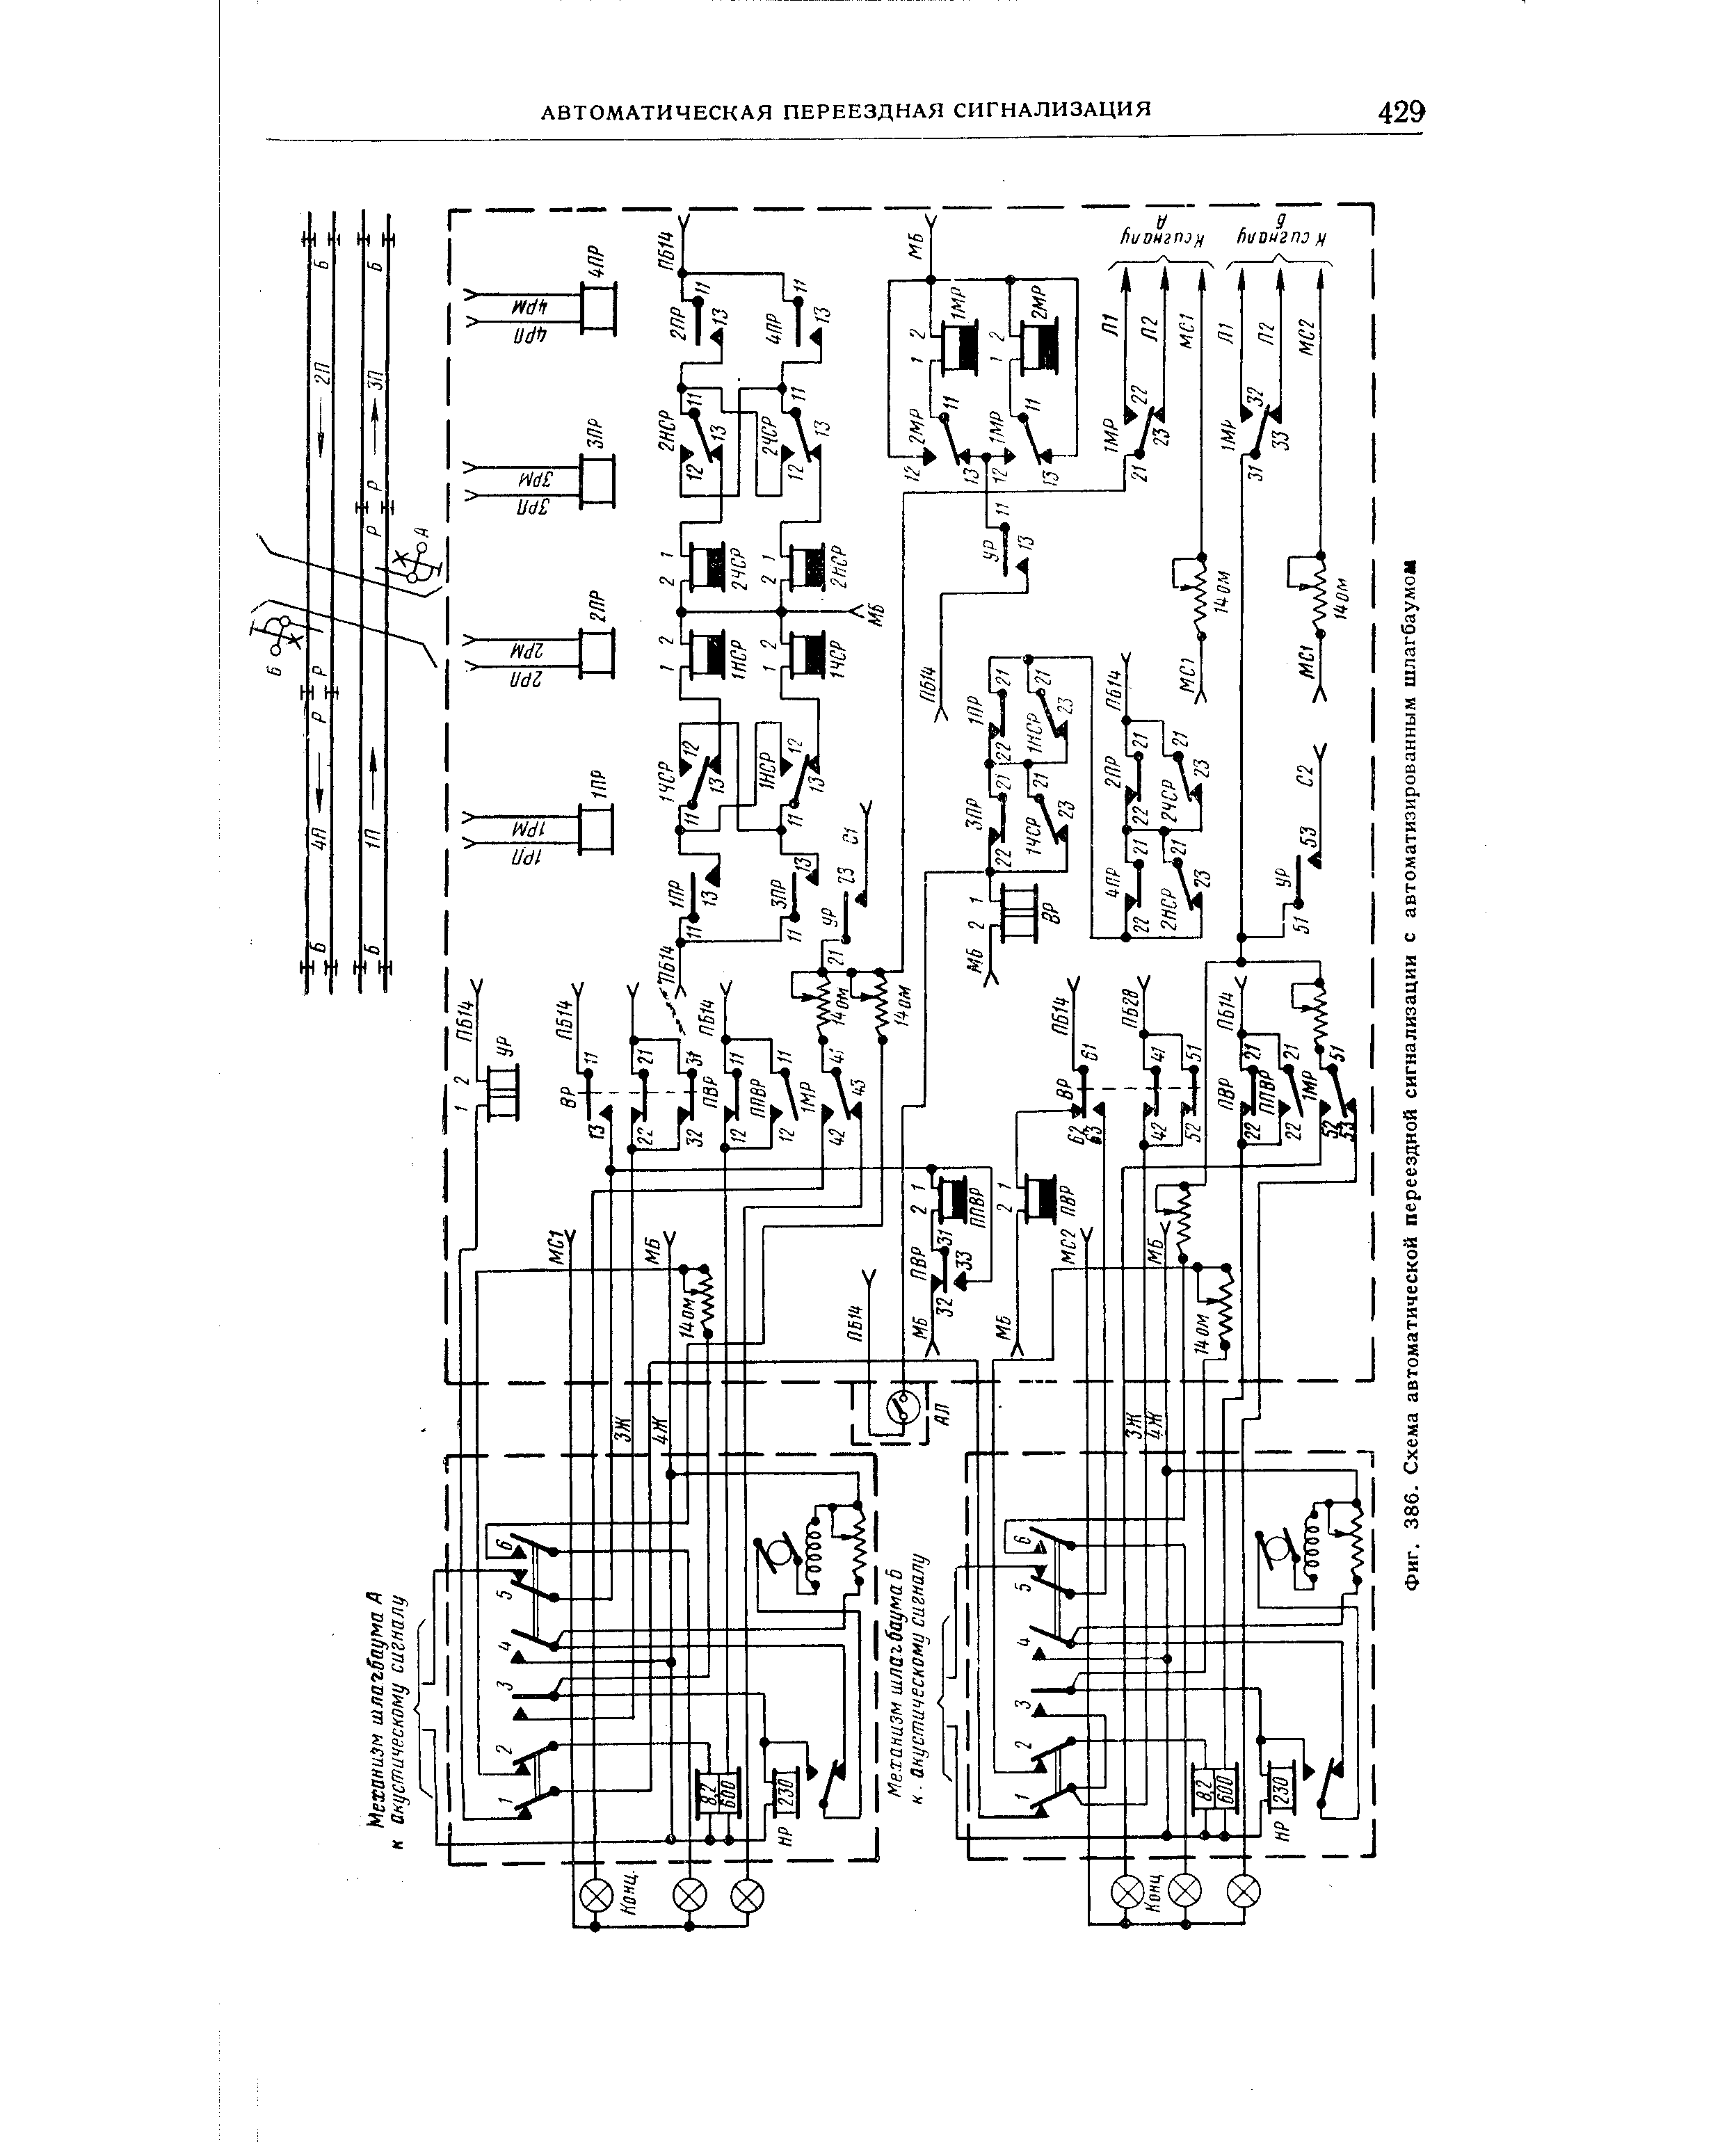 Фиг. 386. Схема автоматической переездной сигнализации с автоматизированным шлагбаумом
